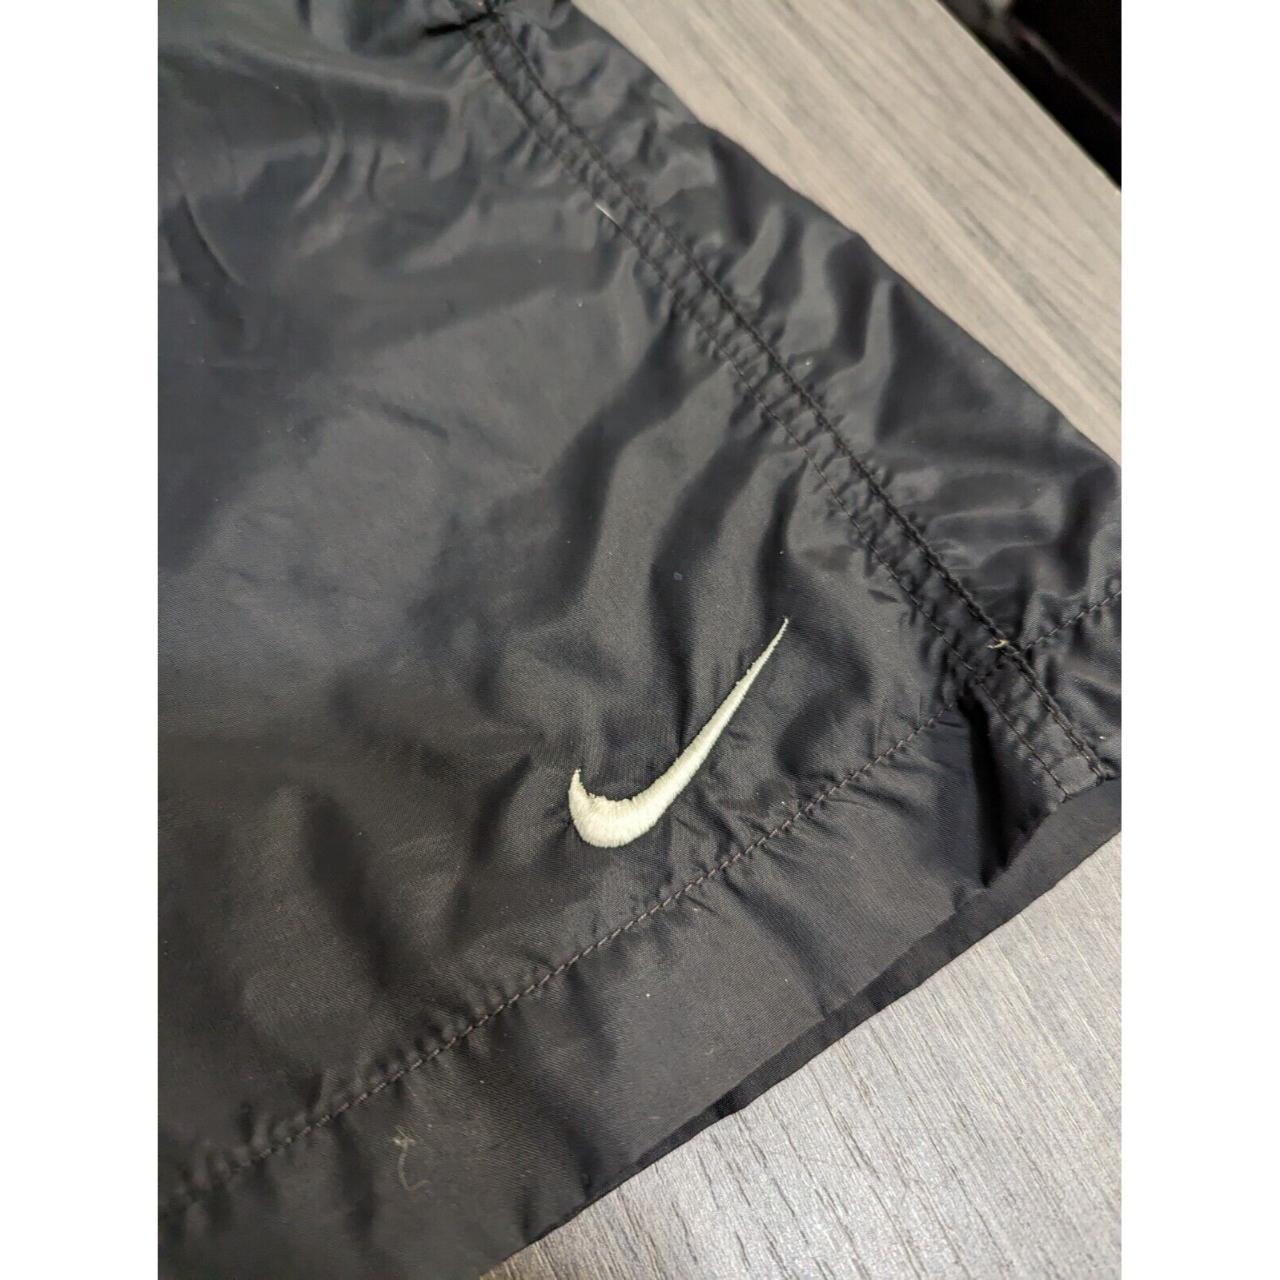 Nike Men's Black and White Swim-briefs-shorts (4)